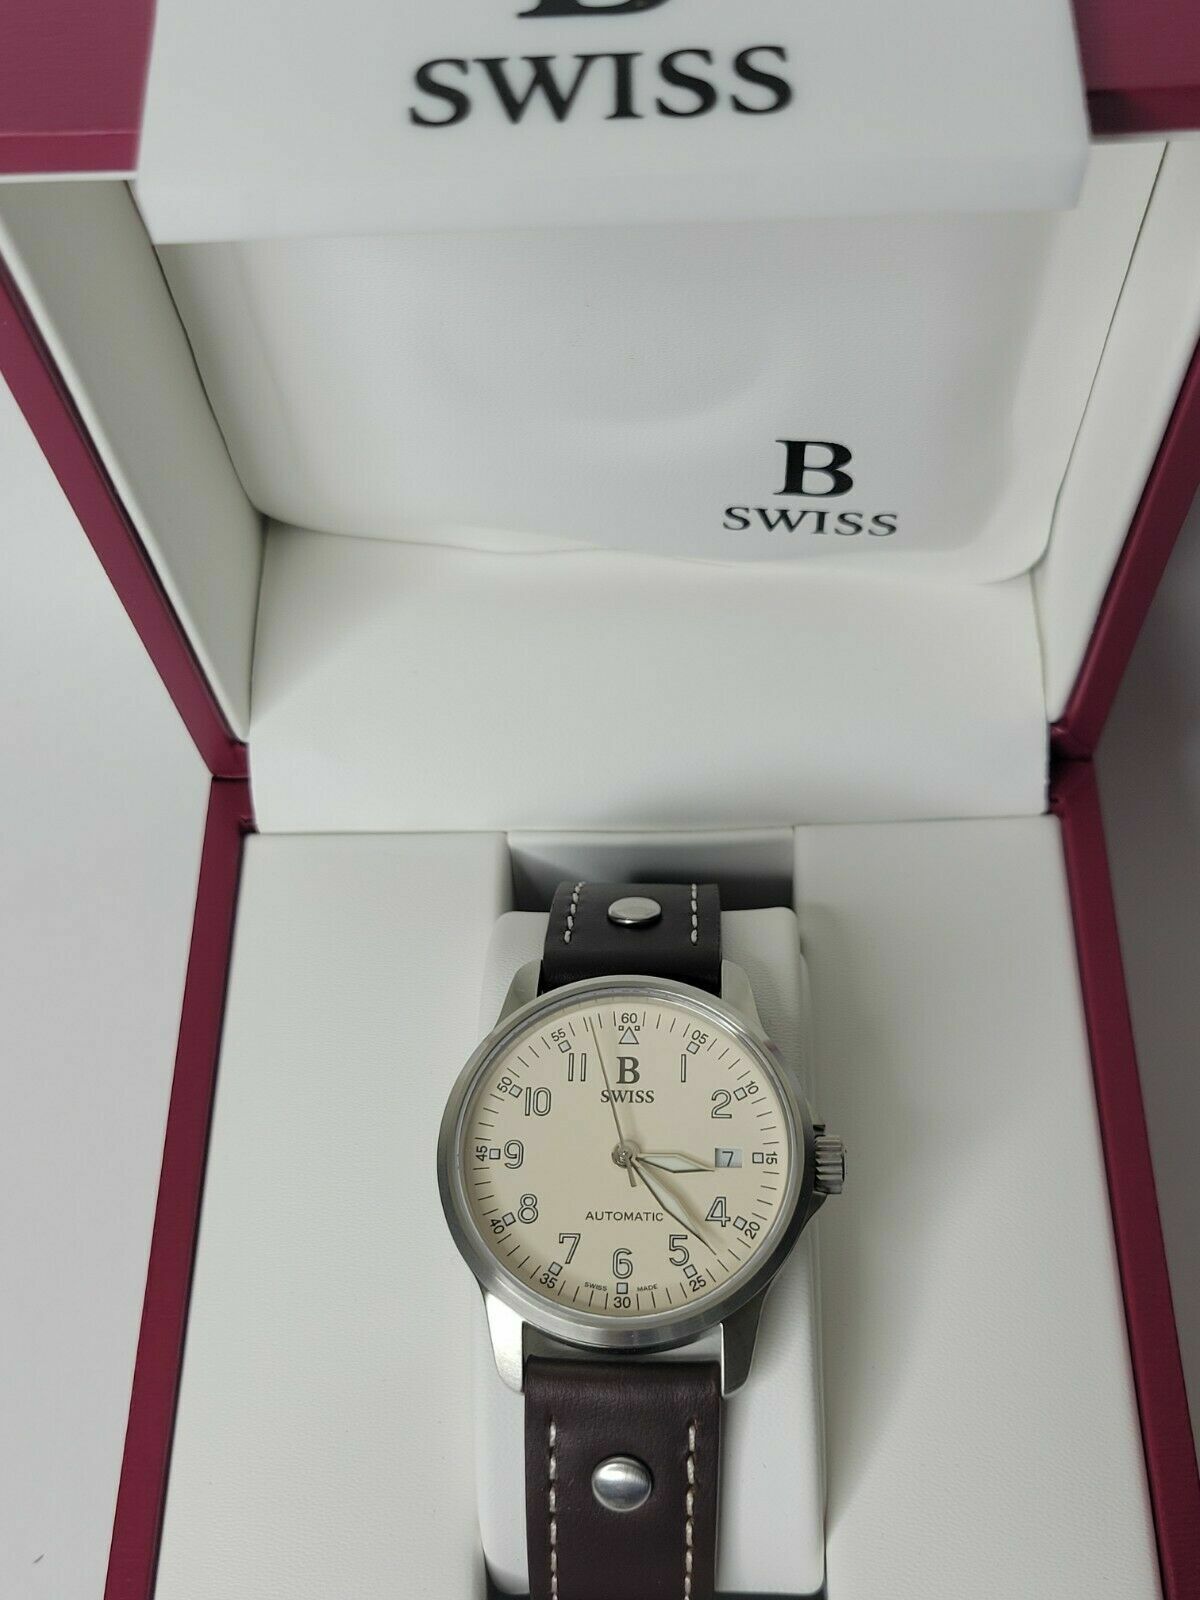 B Swiss by Bucherer Flightstar Men\'s Swiss Made Automatic Pilot Watch $2420 NEW